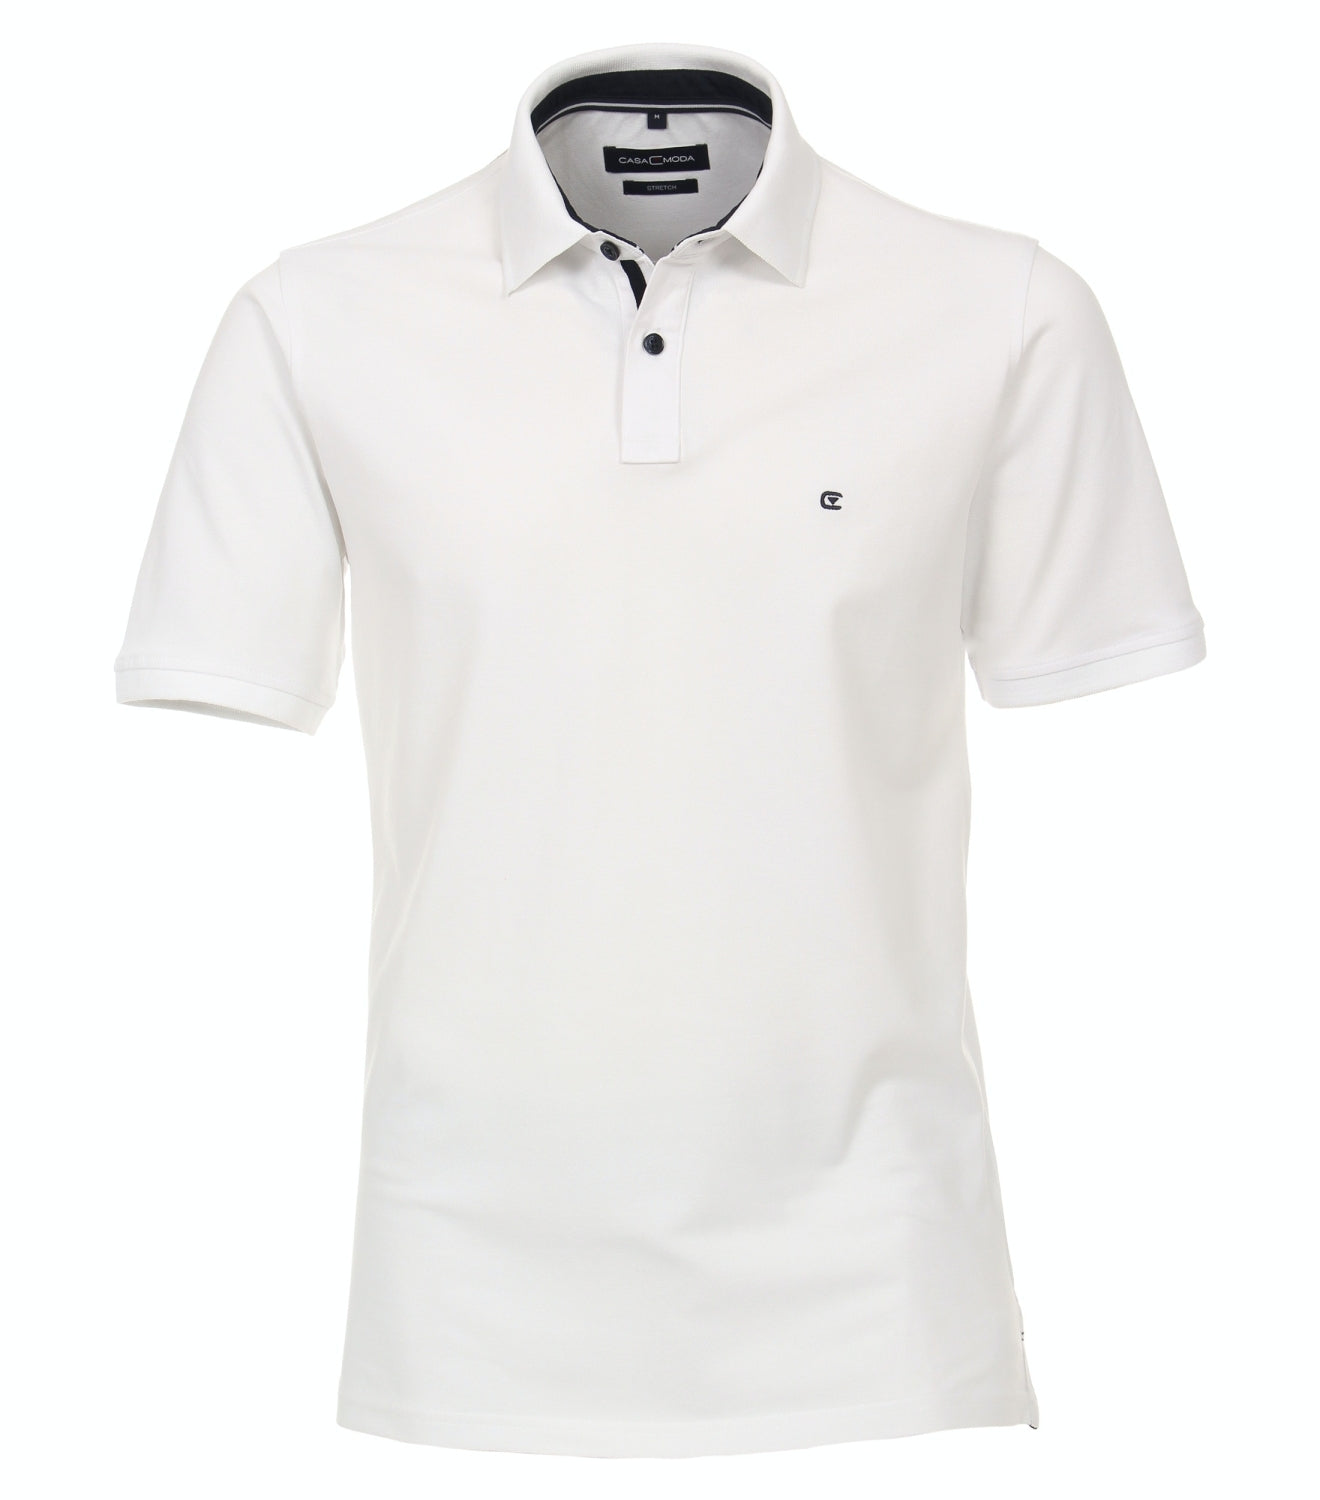 Polo shirt plain 004470